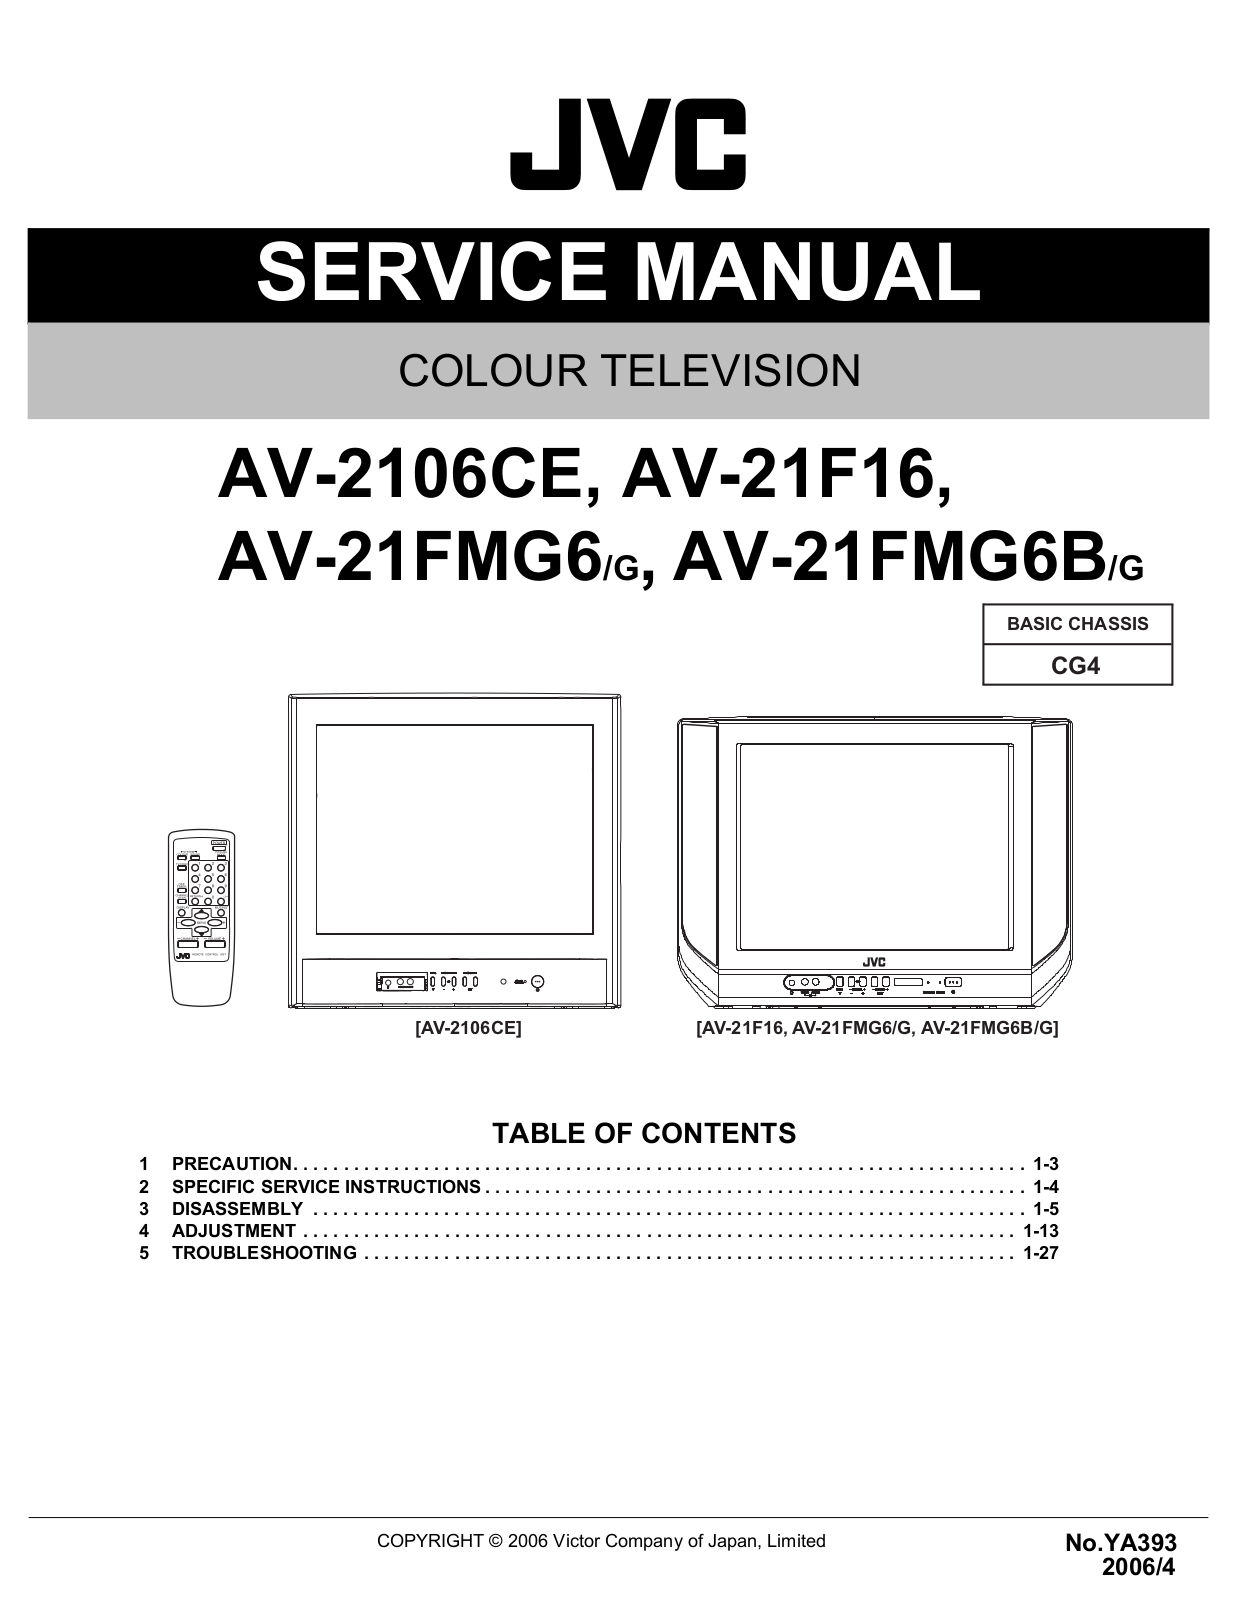 jvc AV-2106CE, AV-21F16, AV-21FMG6-G, AV-21FMG6B-G Service Manual